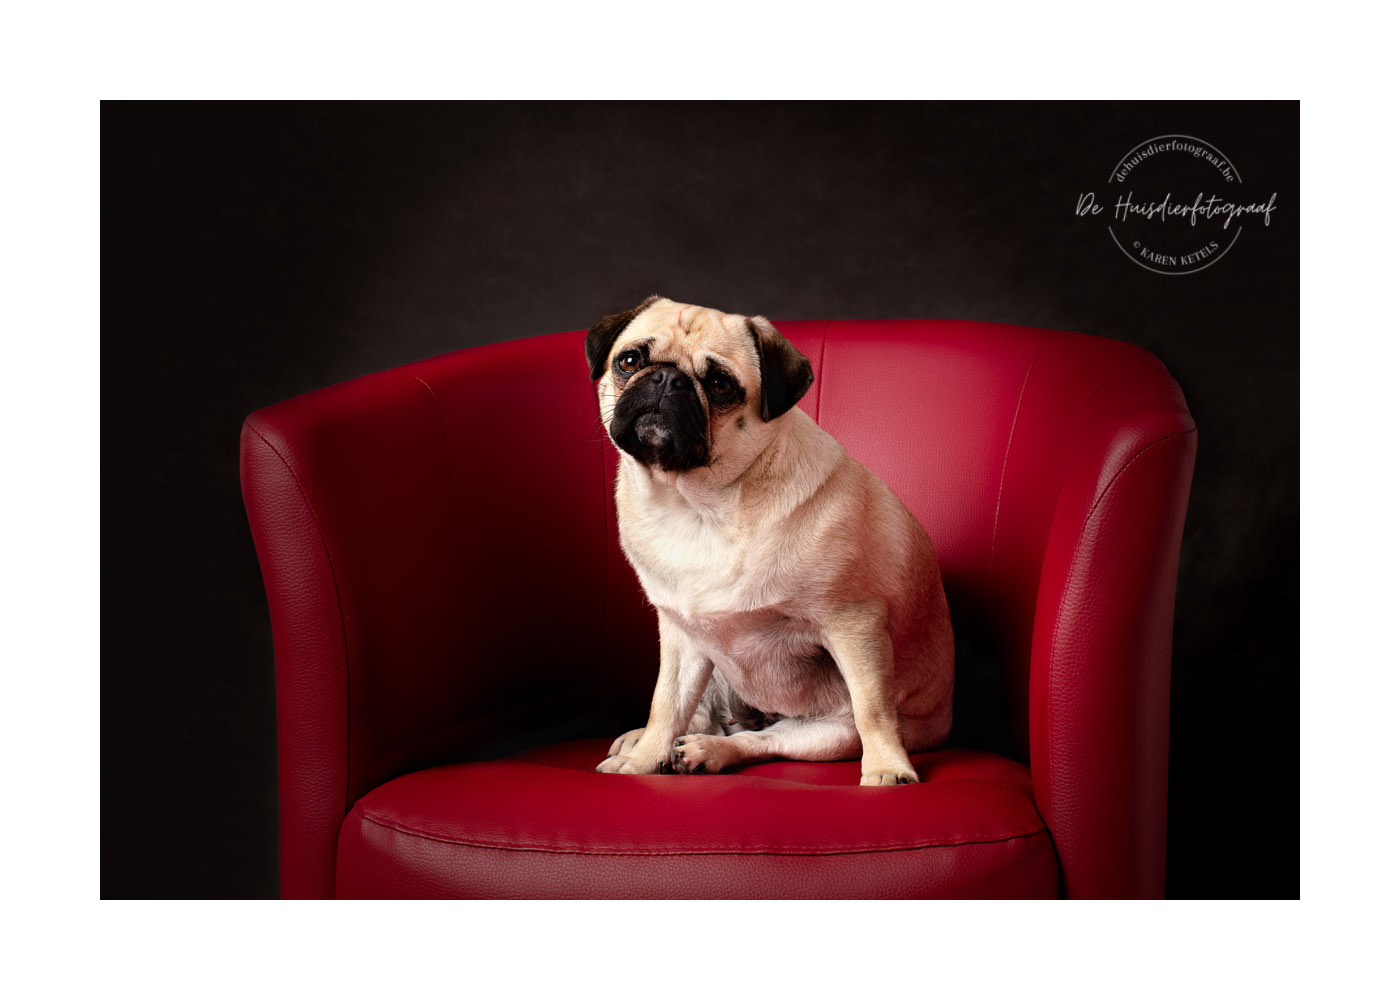 Mopshondje in een rode zetel tegen een zwarte achtergrond. Portret door De Huisdierfotograaf.